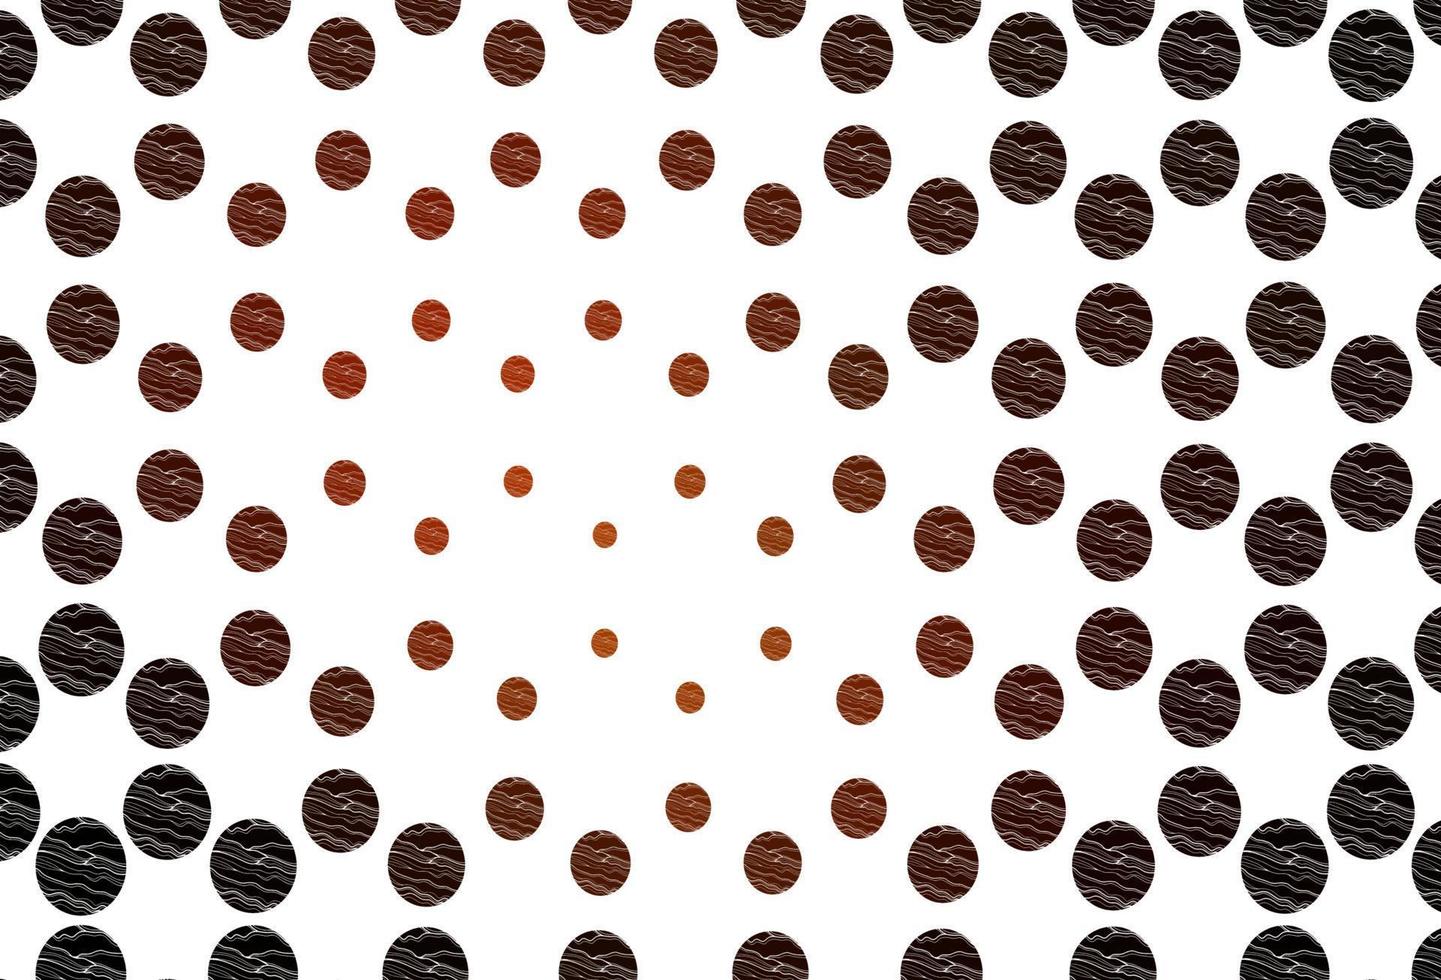 modelo de vetor vermelho claro com círculos.